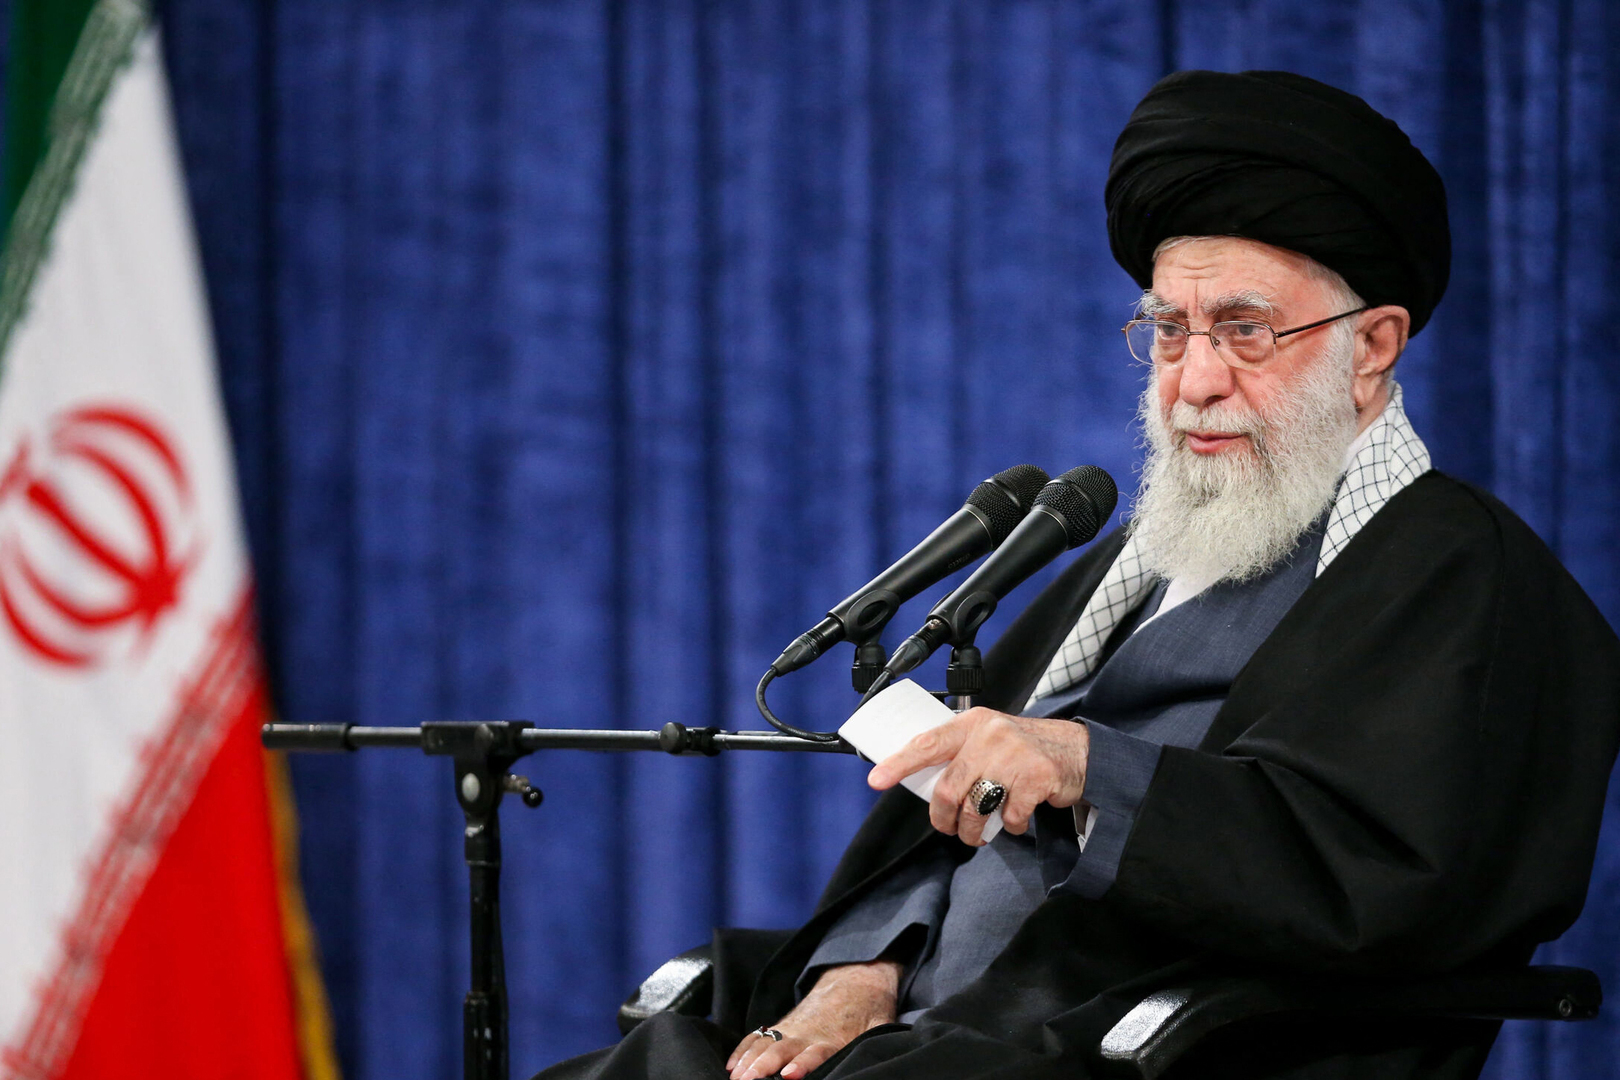 المرشد الإيراني علي خامنئي تعليقا على بدء الهجوم على إسرائيل: ستتم معاقبة النظام الشرير